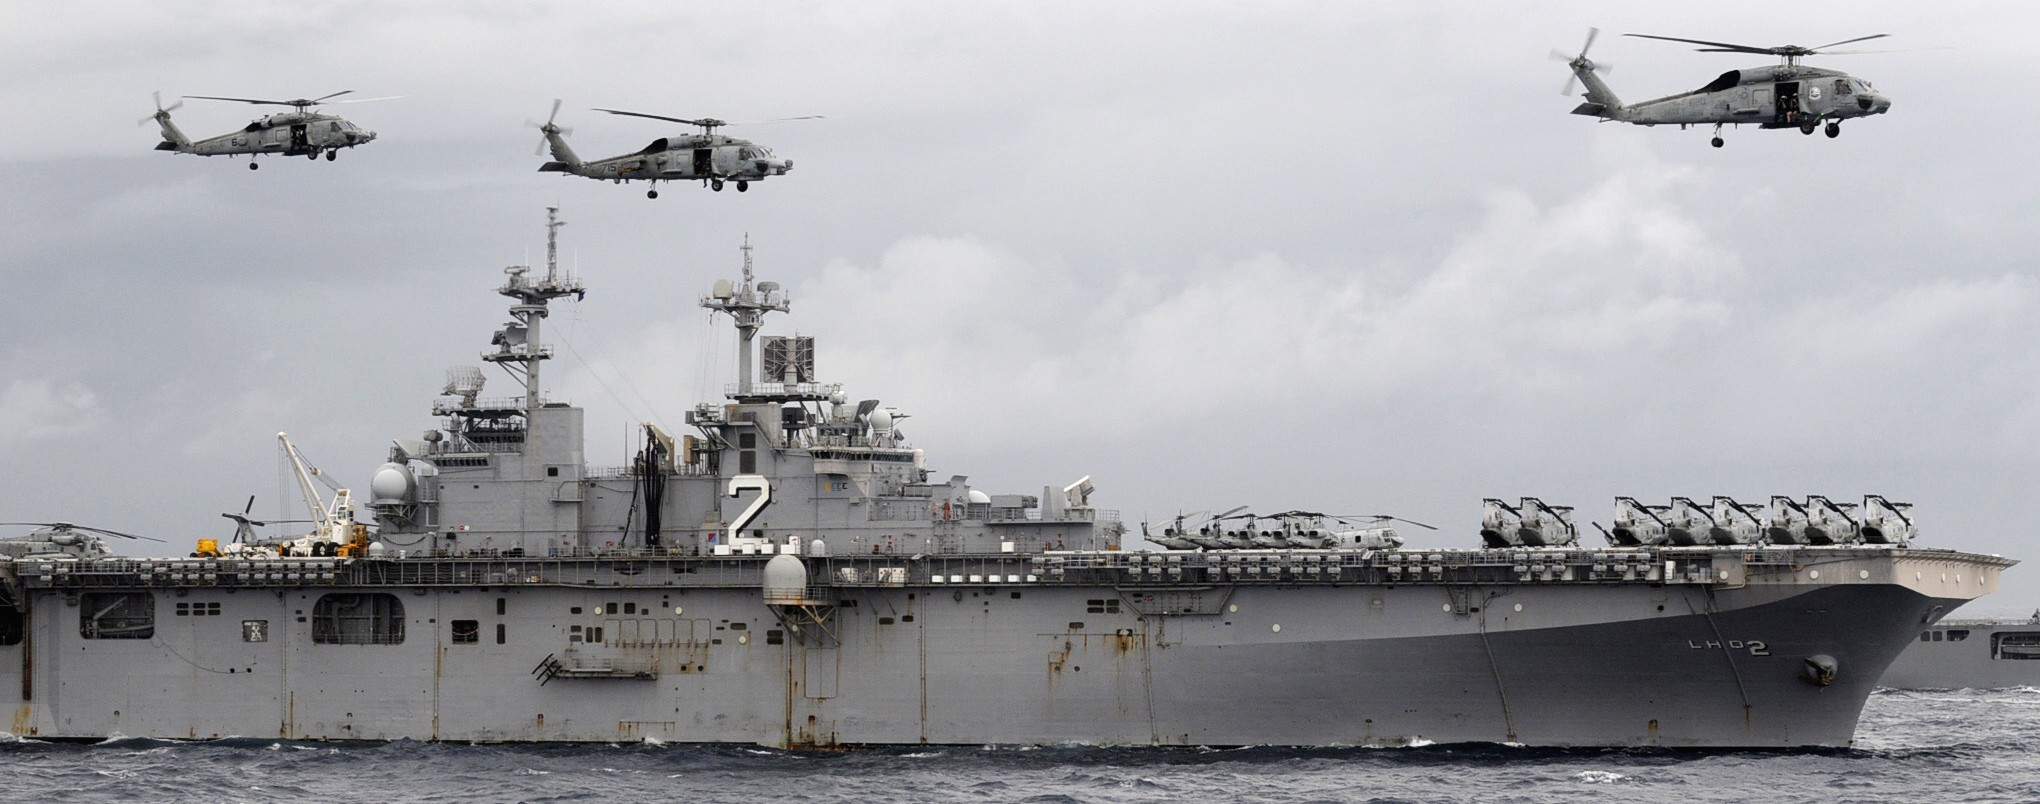 lhd-2 uss essex wasp class amphibious assault ship landing helicopter us navy marines hmm-265 79